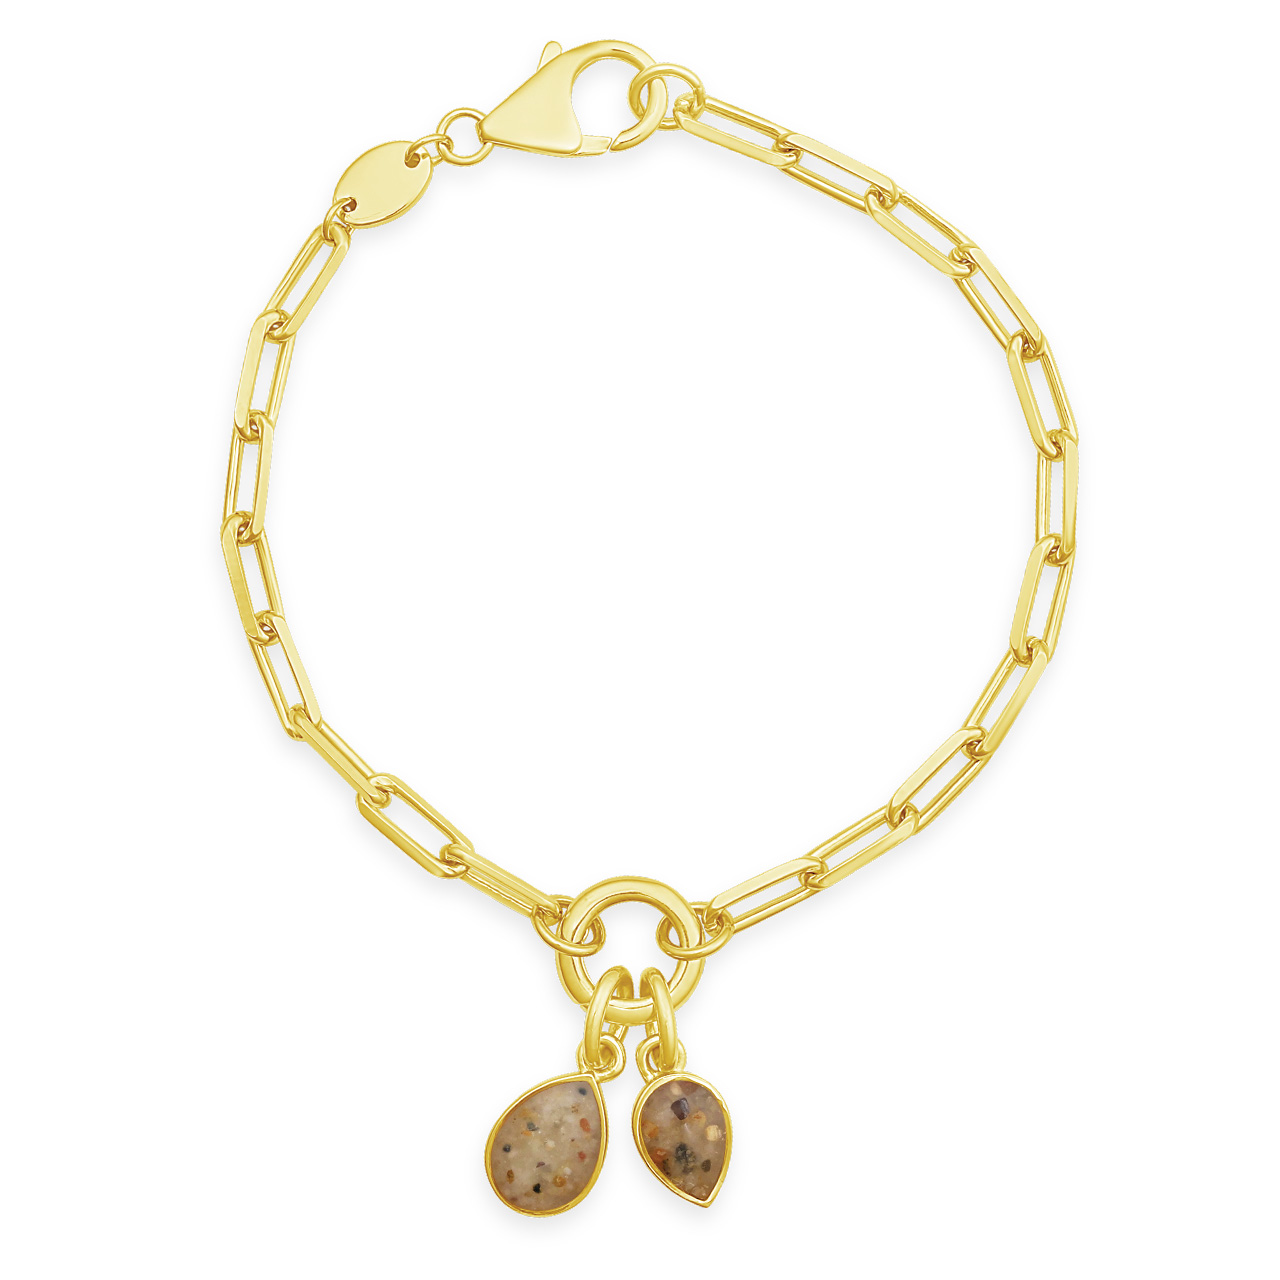 Collectible Travel Treasures™ Simple Charm Bracelet - 14k Gold Vermeil